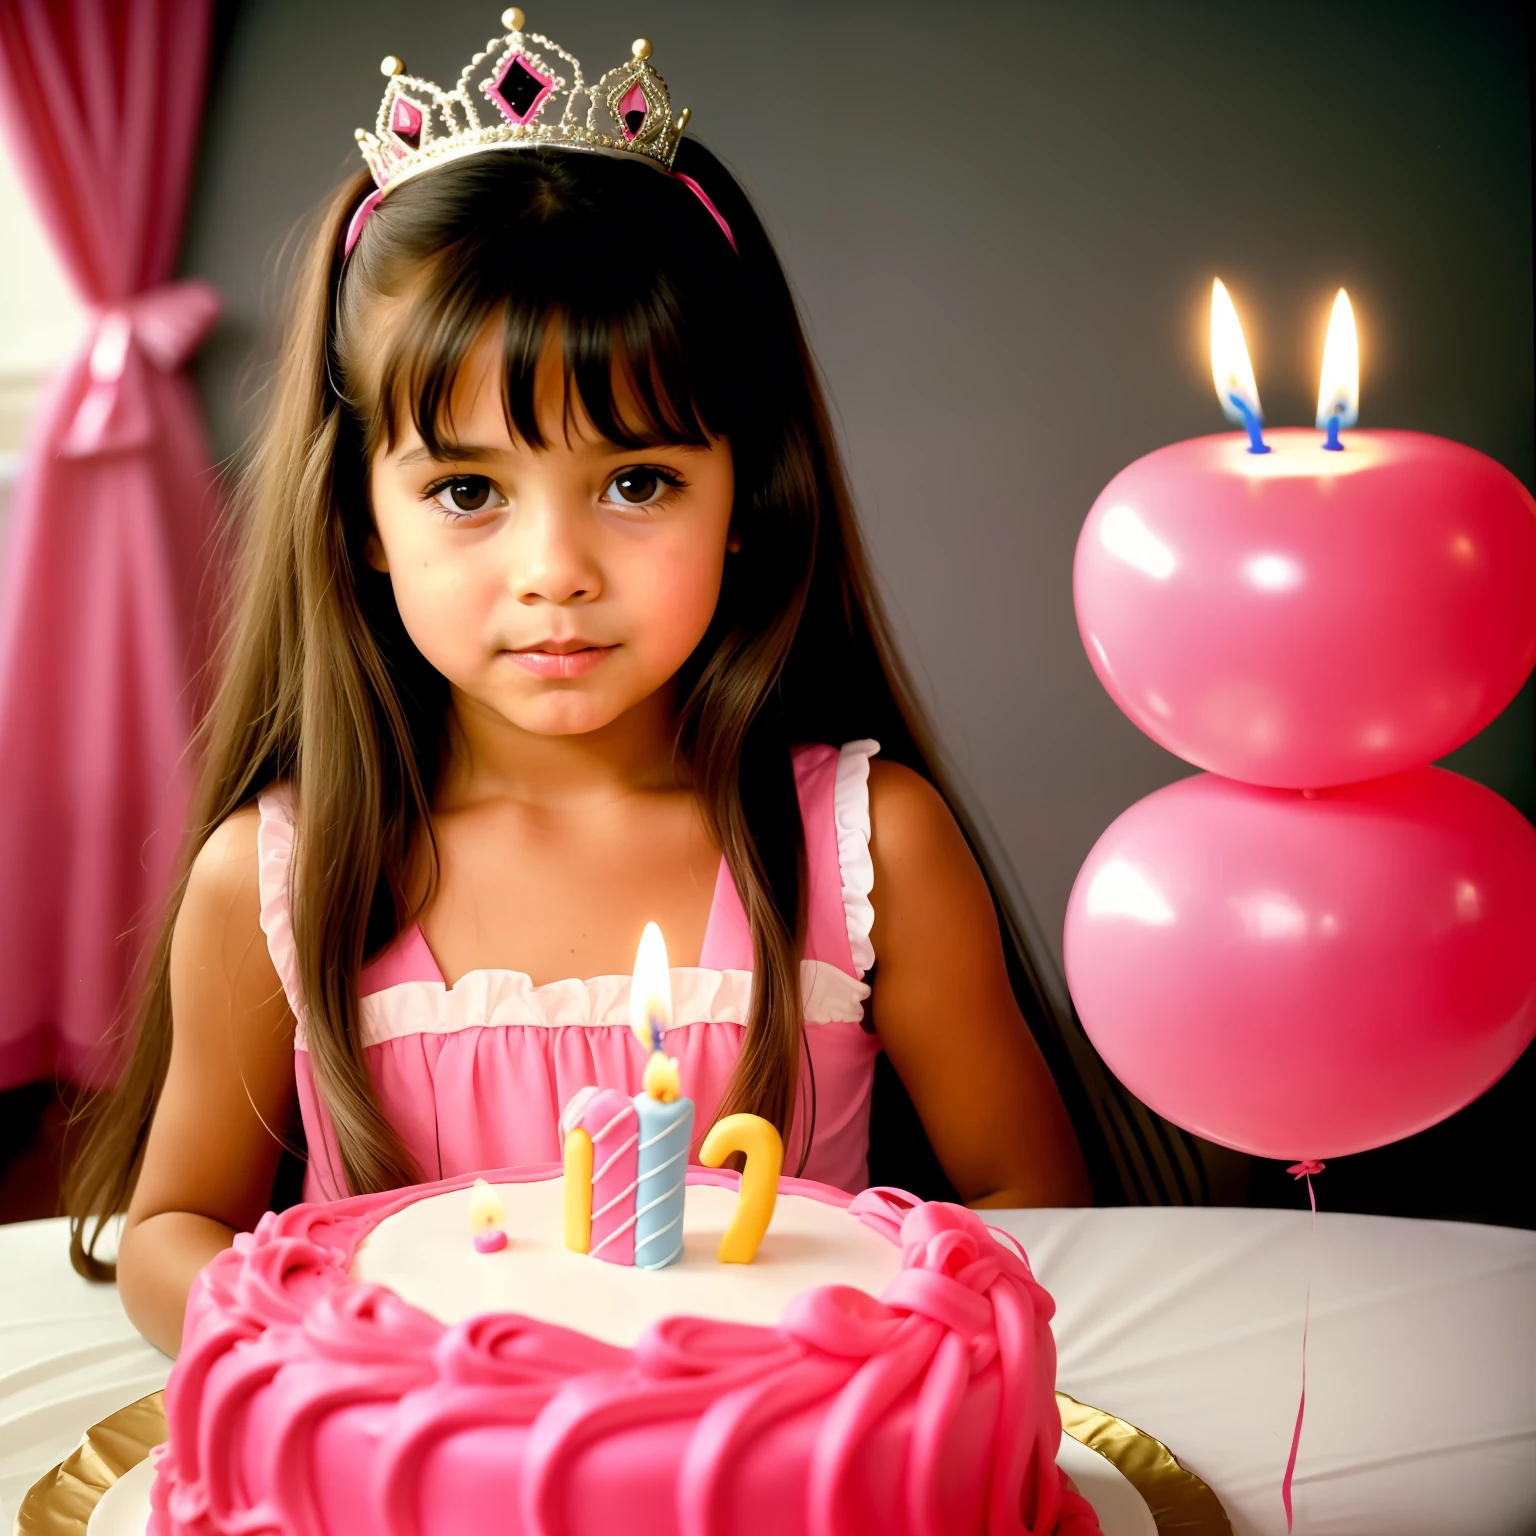 Una fotografía de 1980 de una niña de 5 años con cabello largo y liso vestida con un disfraz de princesa rosa apagando 5 velas encima de un pastel de cumpleaños., a well-detailed 80's cake, un pastel insondable (piel muy detallada: 1.2)  iluminación suave, alta calidad,